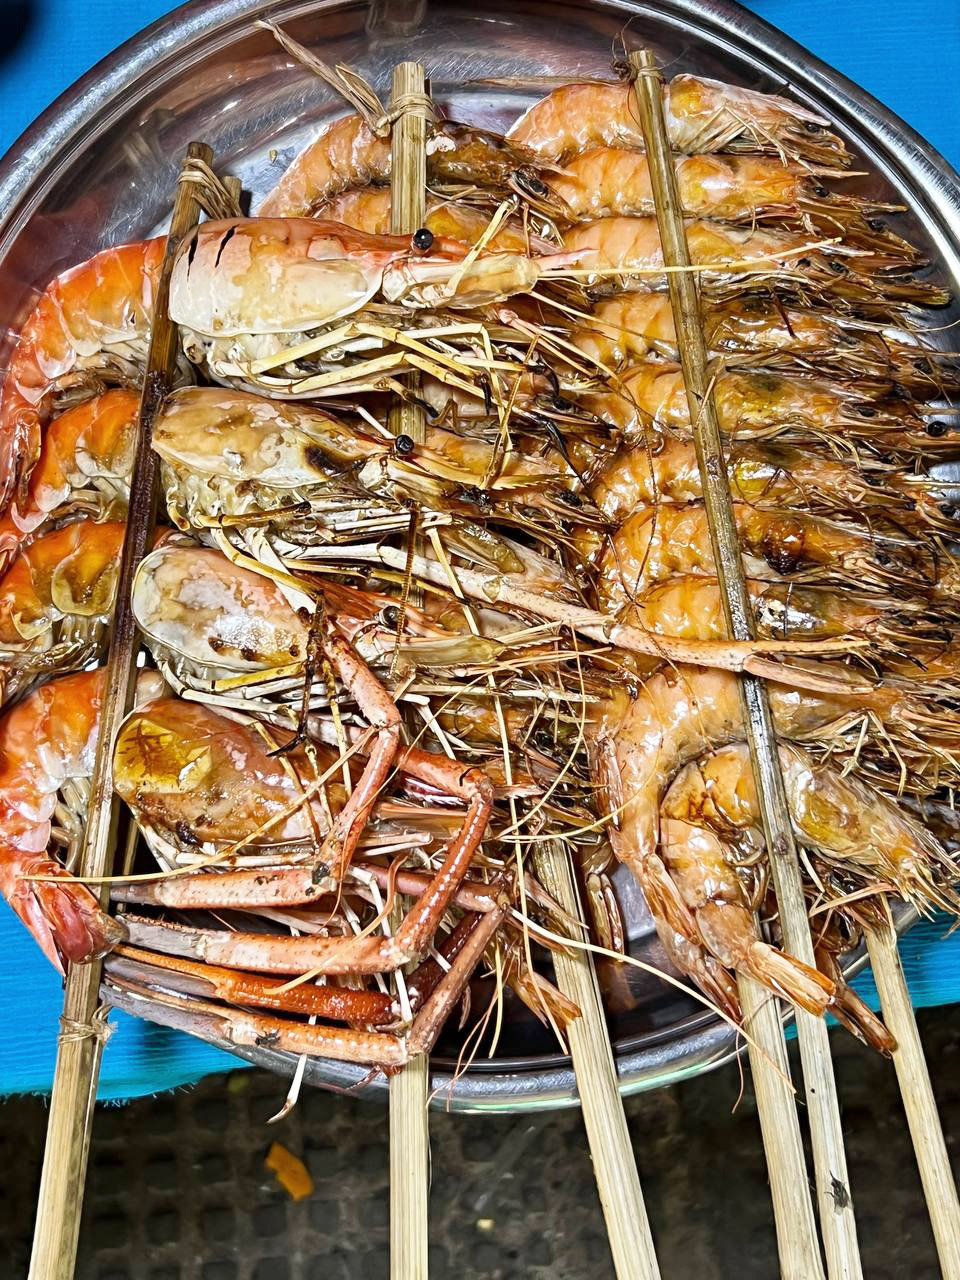 Phnom Penh Street Food: Shrimps & Prawns